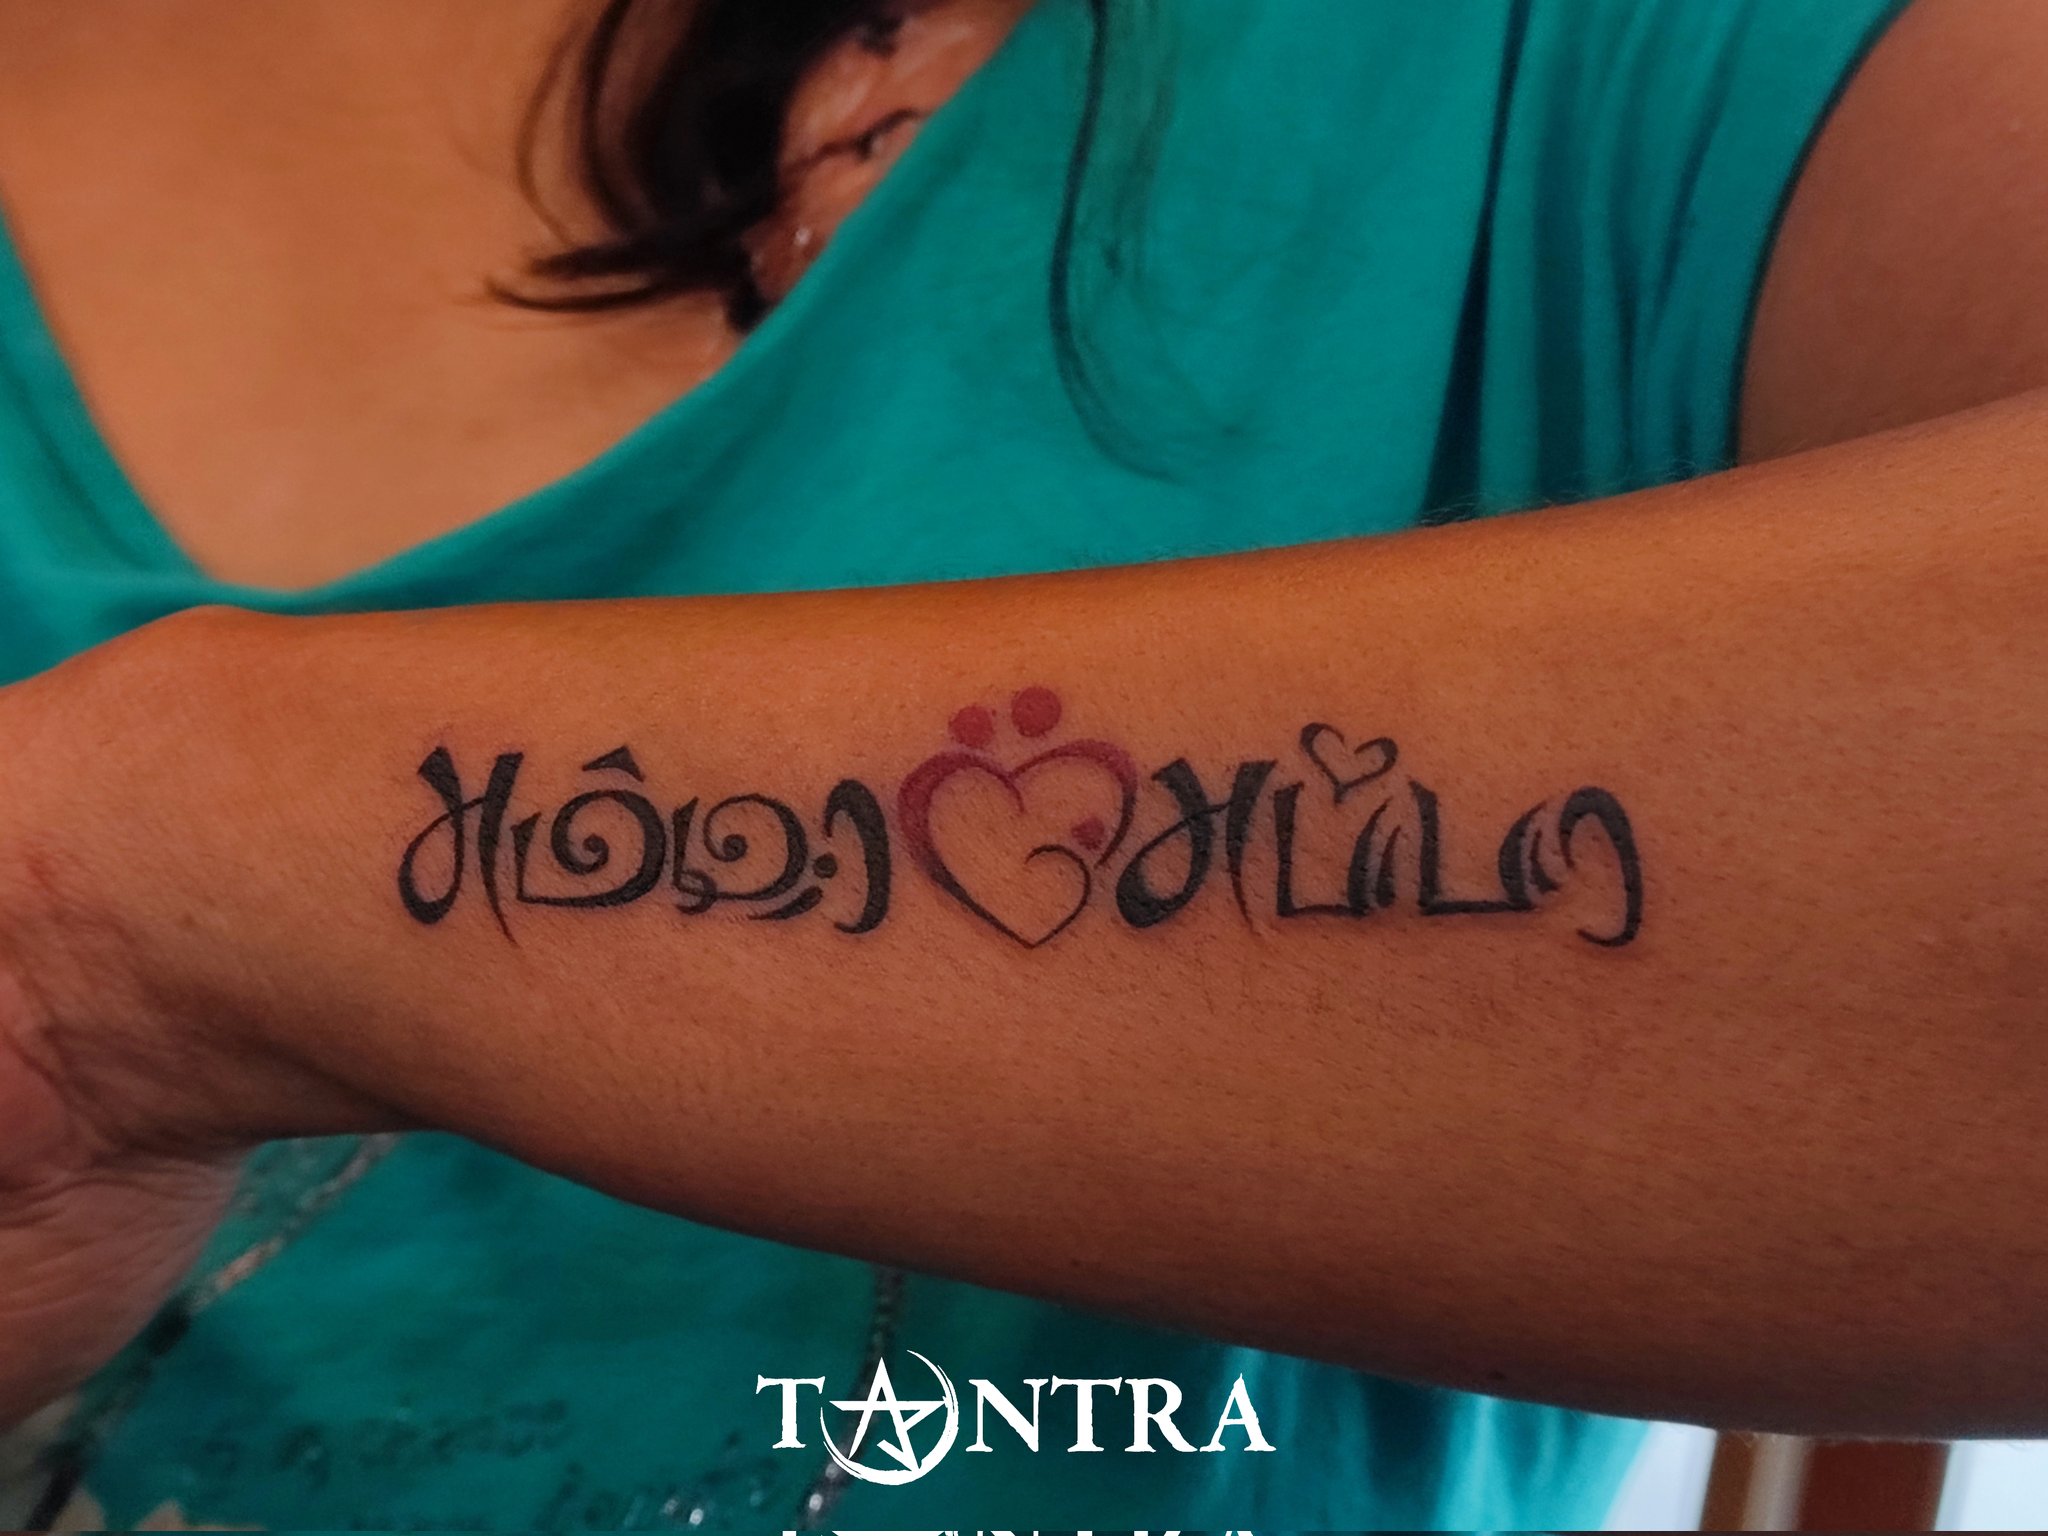 TANTRA TATTOO on X: "Tamil scripting tattoo https://t.co/UtGaLD4Kur" / X